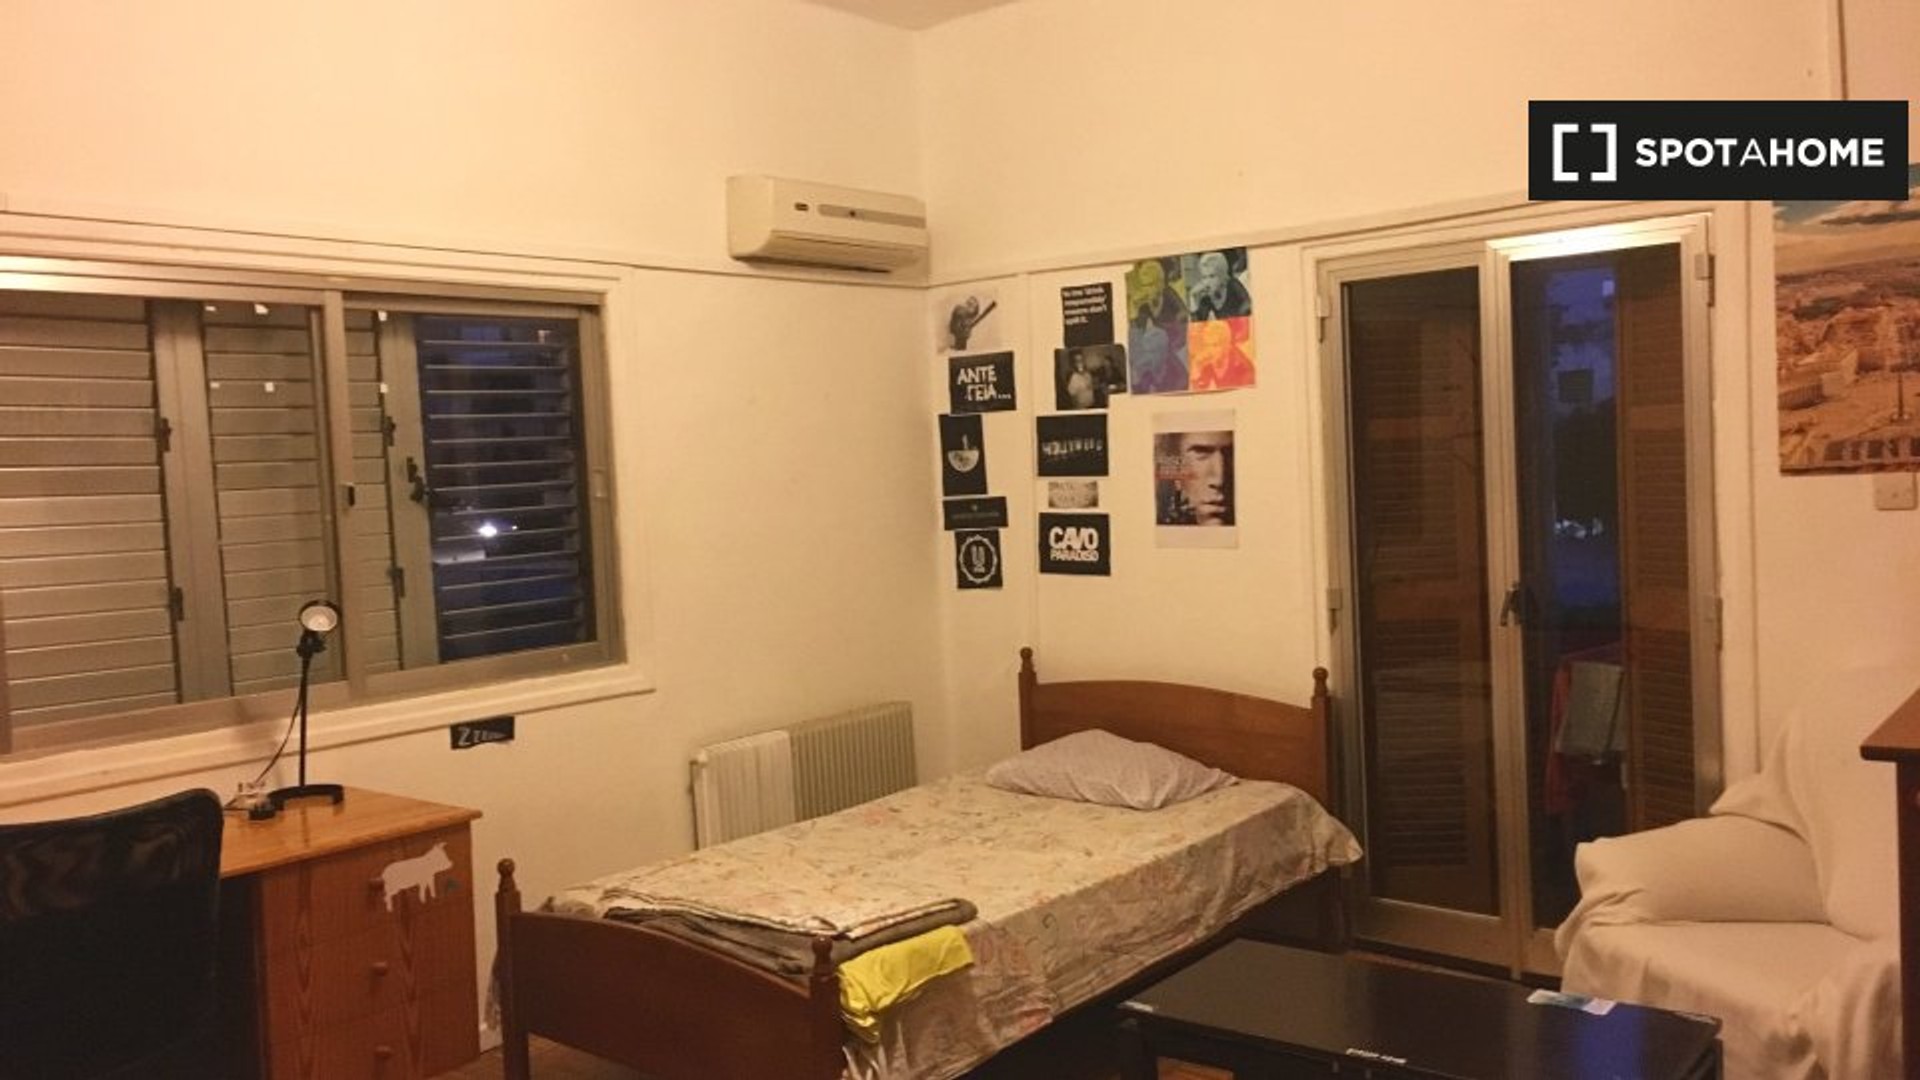 Alquiler de habitaciones por meses en Nicosia